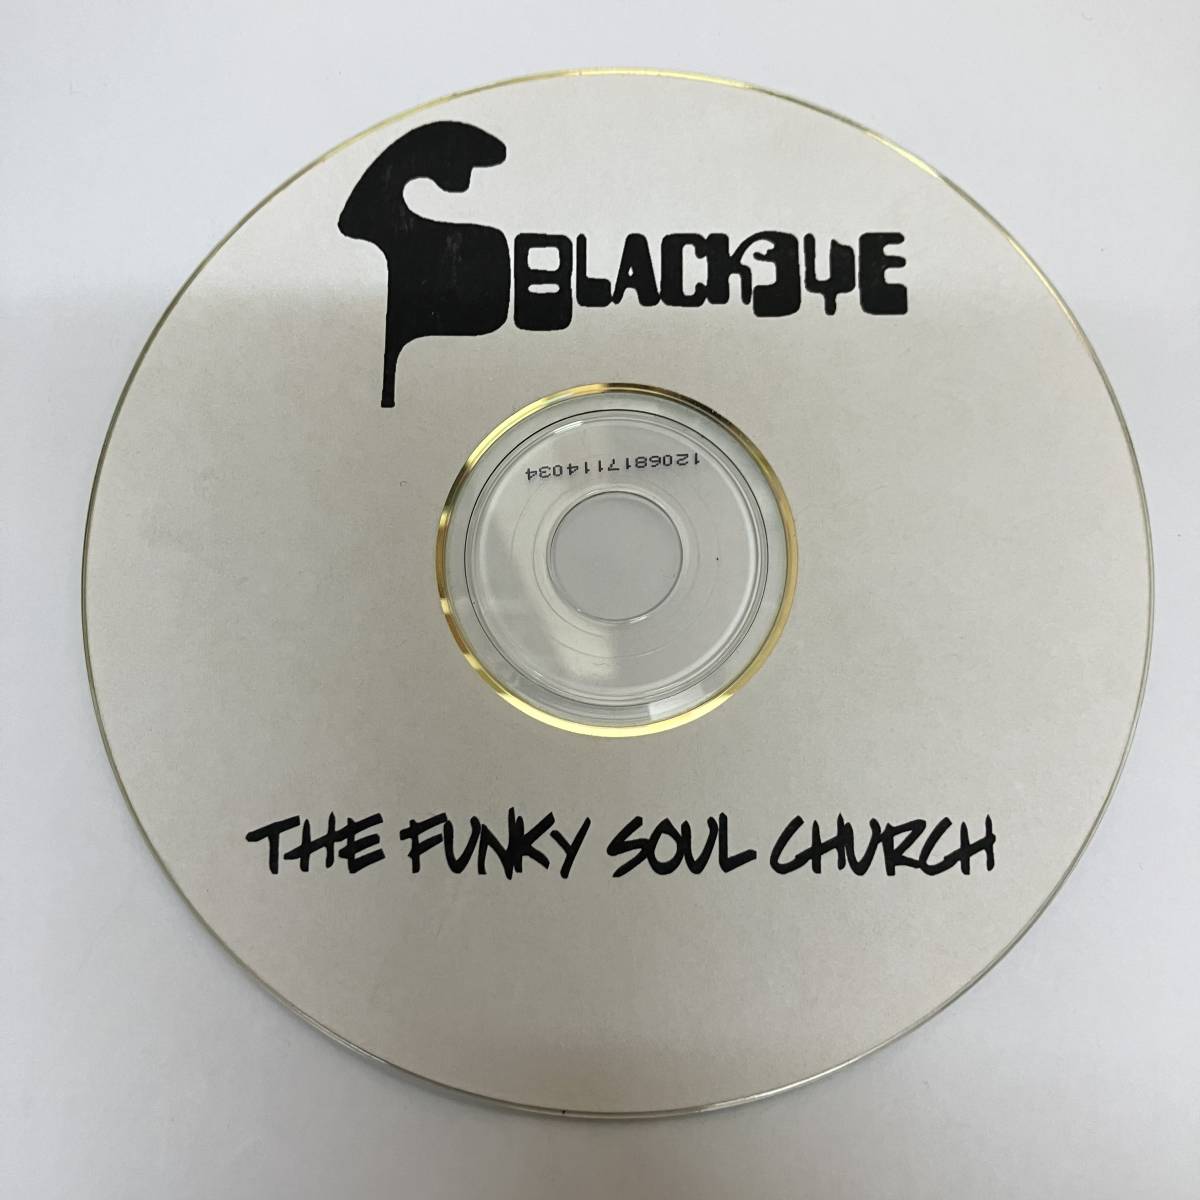 裸6 HIPHOP,R&B SBLACKEYE - THE FUNKY SOUL CHURCH シングル CD 中古品_画像1